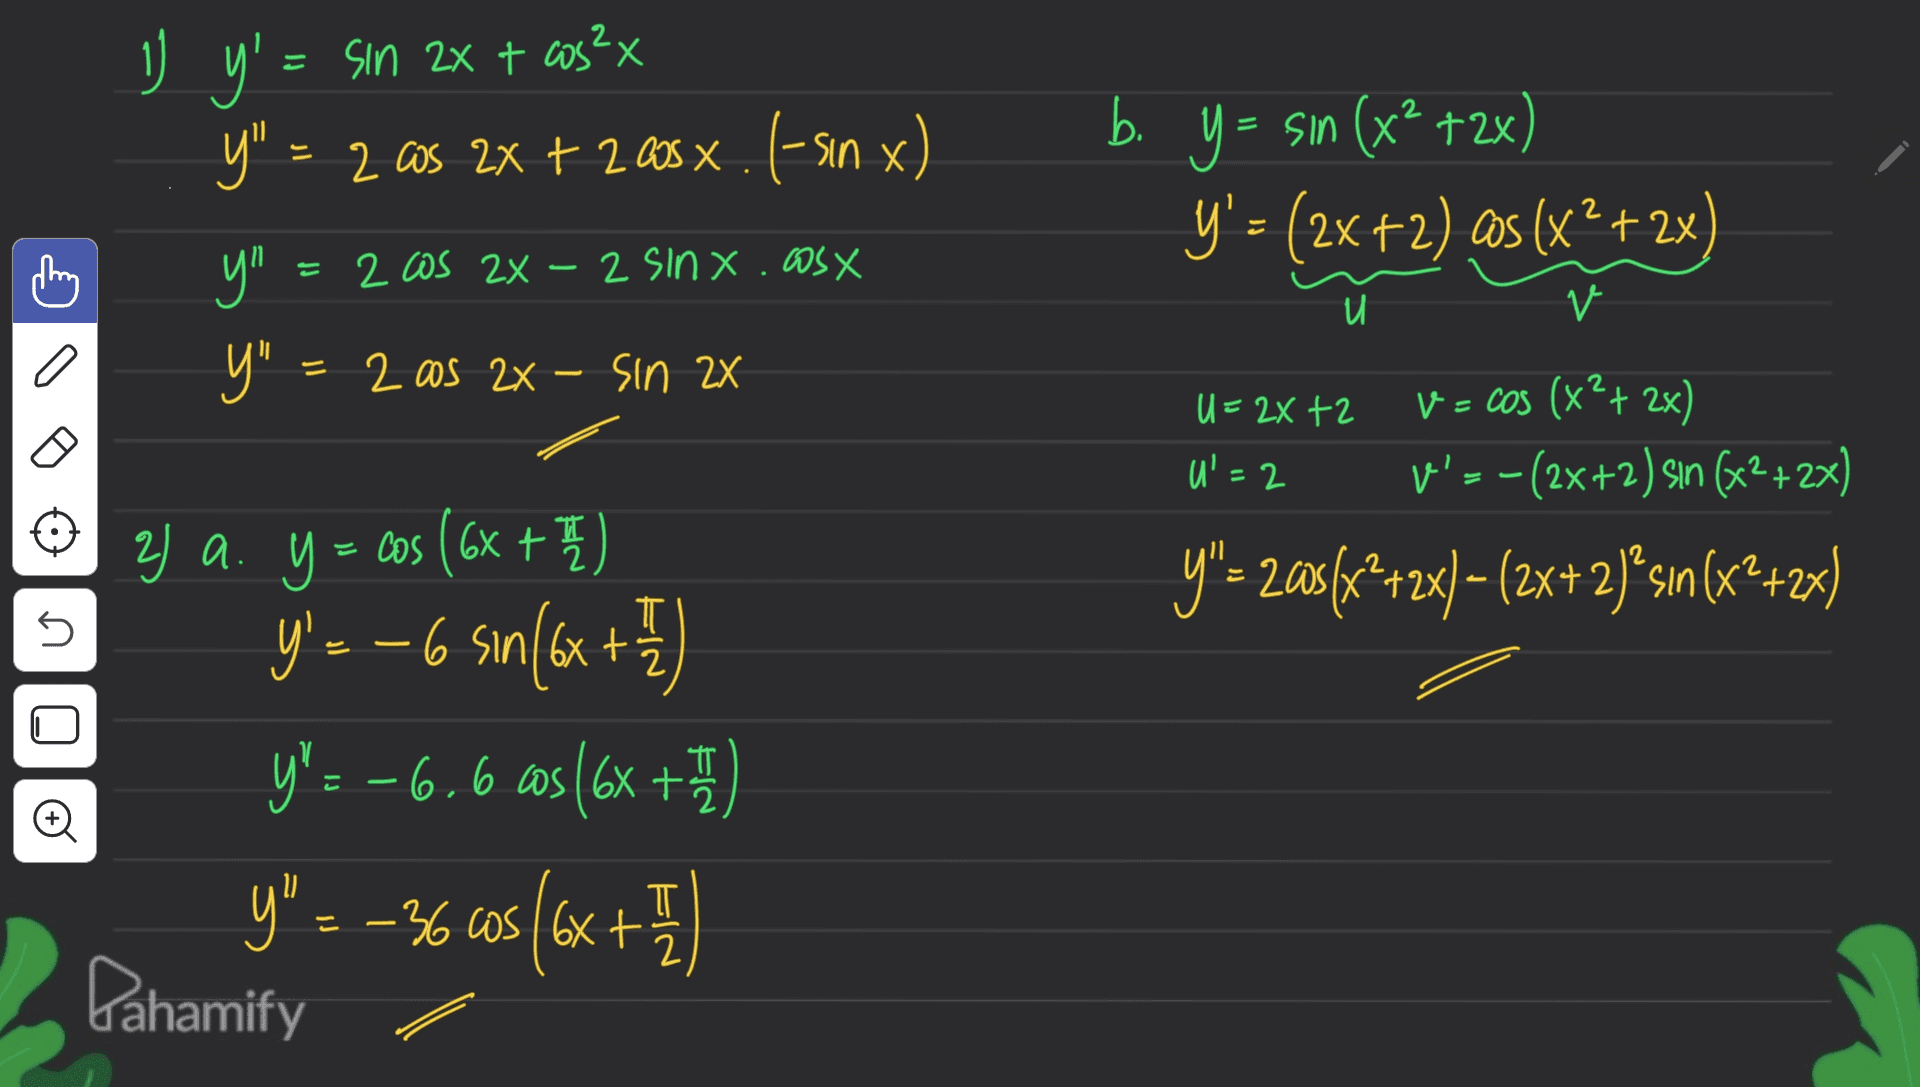 1 + nx b. _y' = sin 2x + cos2x y" = 2 cos 2x + 200 x. 1-sin x у" Y" = 2 as 24 - Sin 2X Y = = sin (x2 +2x) Y'= (2x+2) as (x² + 2x) 2 Cos 2X - 2 sinx.cosx и v o U=2X+2 U'=2 V = cos (x2+ 2x) V'= -(2x+2) sin (x2+2x) y"= 20${x2+2x) – (2x+2)+sin(x2+2x) I 5 T 2 2) a. y = cos (6x + 2 h y'- - 6 sın(6x + y'= -6.6 cs (6x + 1 y" = -36 cos (6x + Pahamify T c o E I 